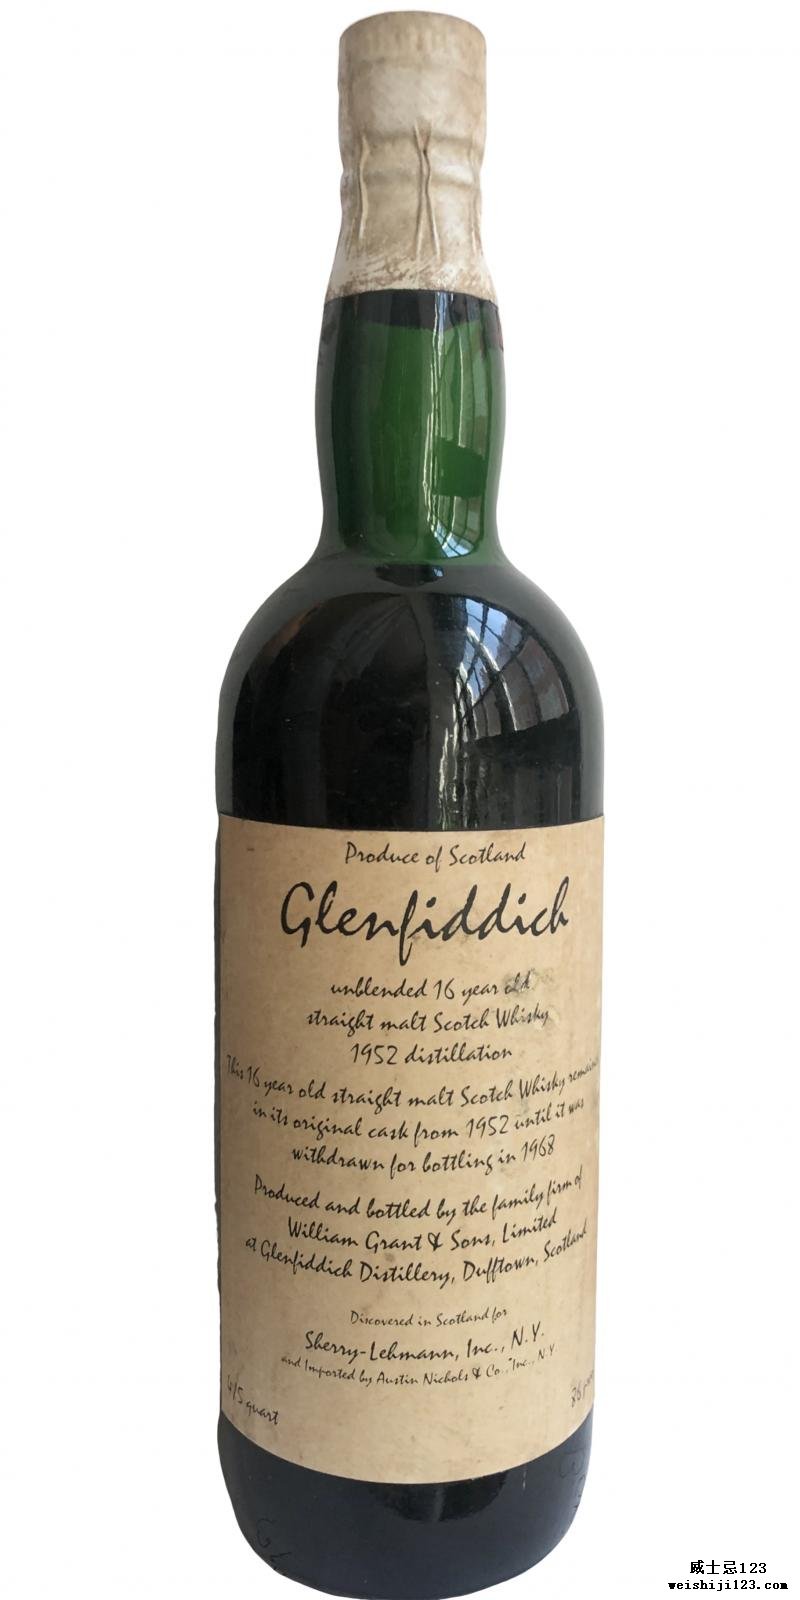 Glenfiddich 1952